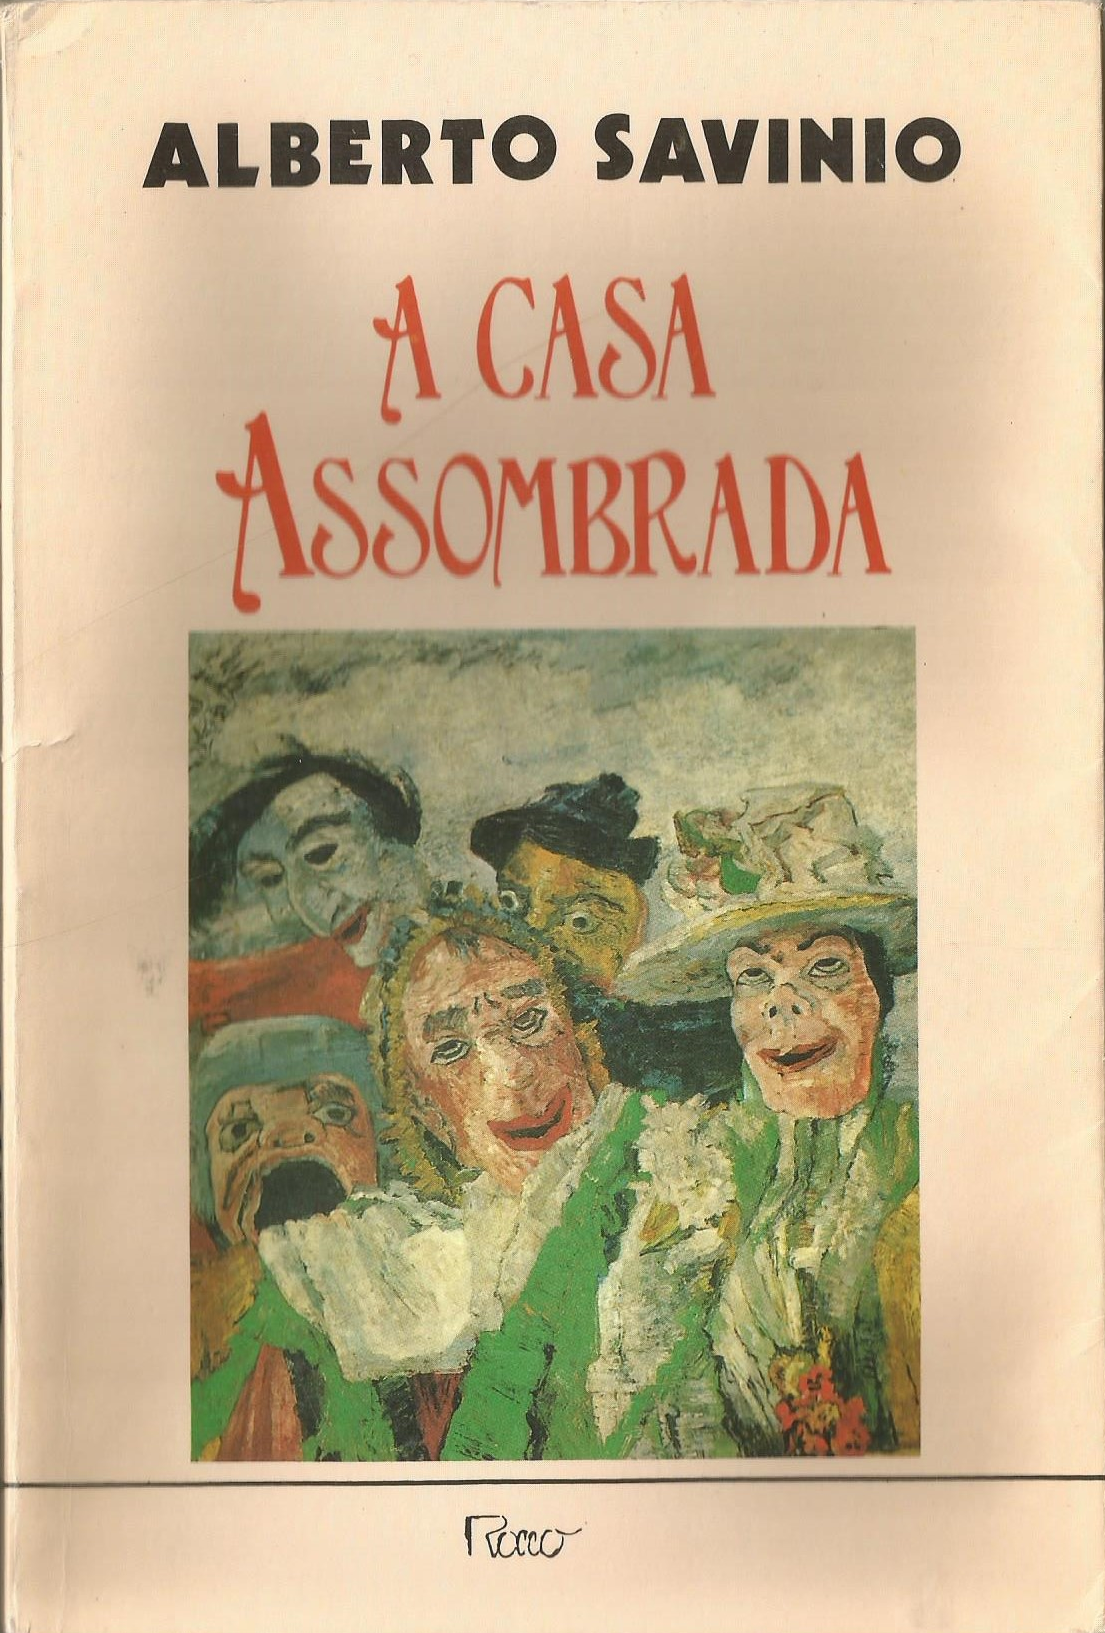 https://www.literaturabrasileira.ufsc.br/_images/obras/a_casa_assombrada_1988_(1)_ok.png